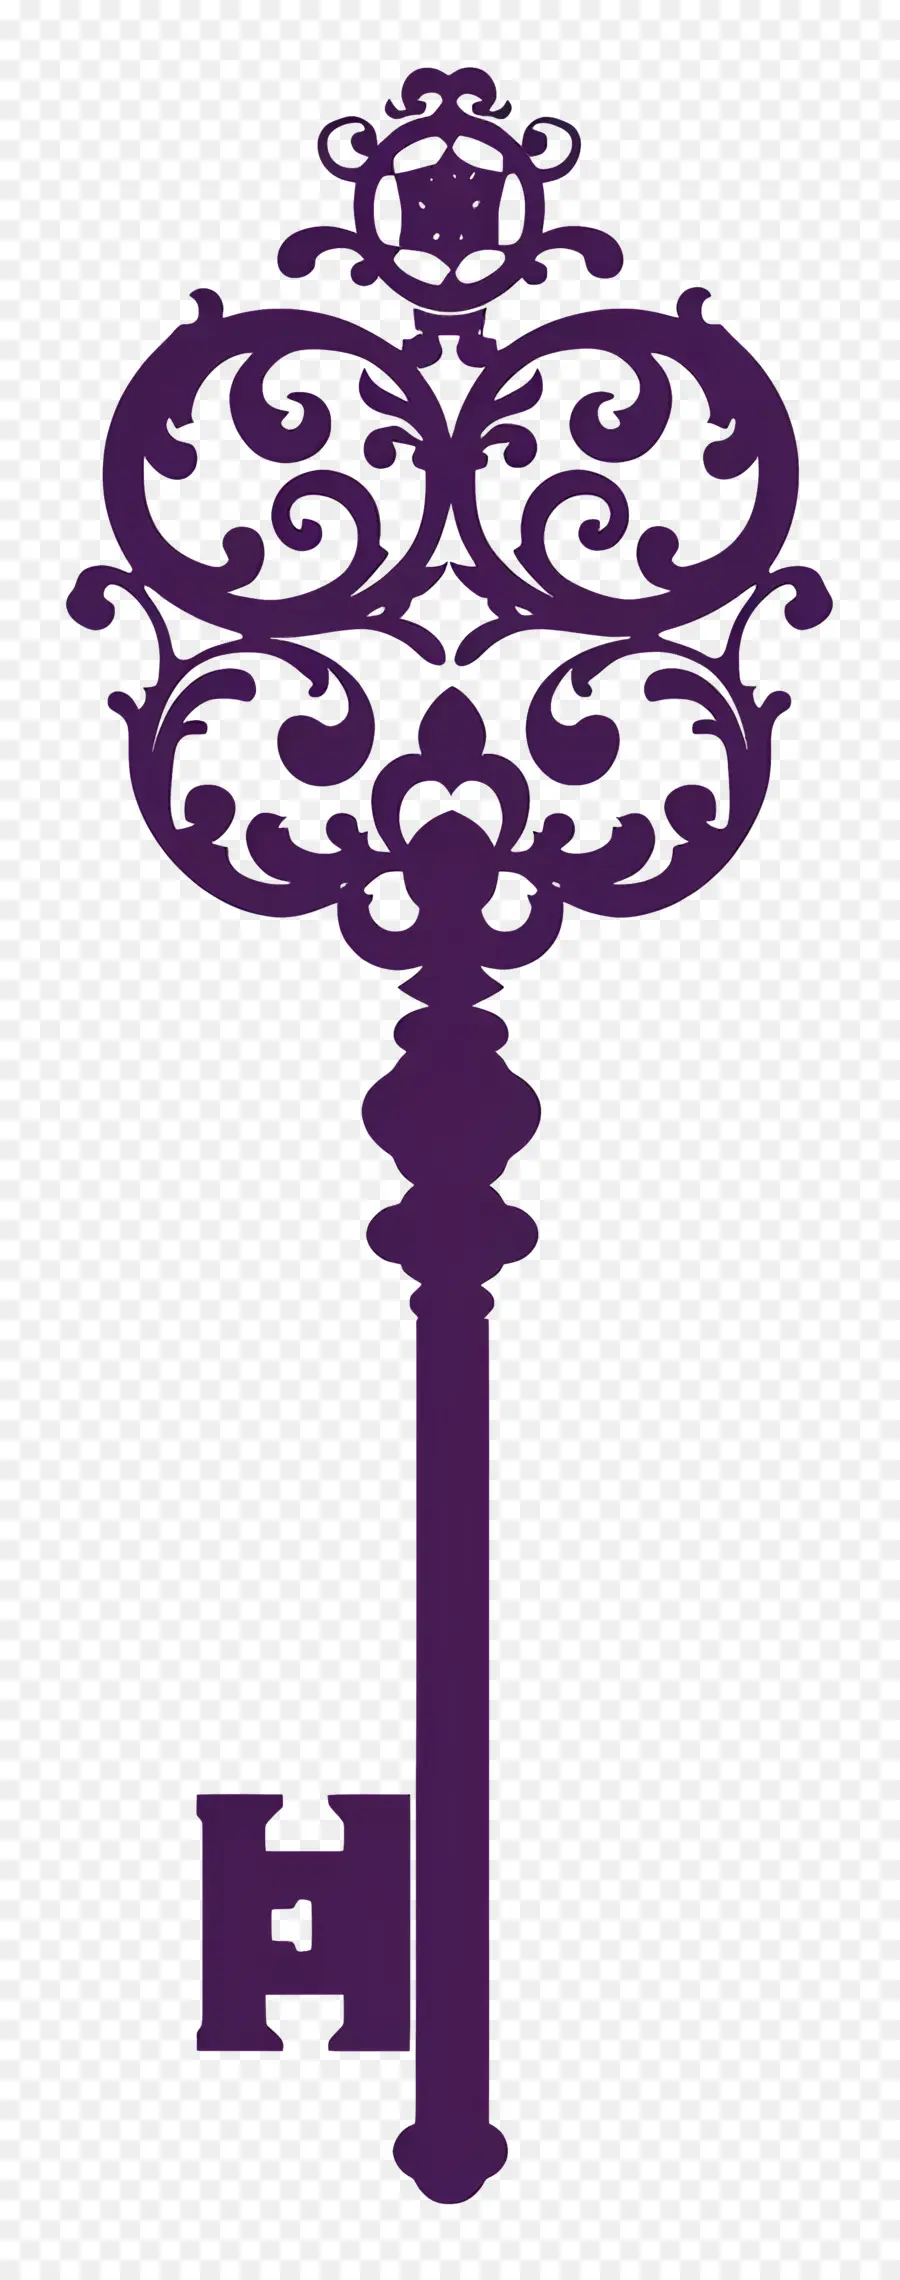 Key Forte Key Gothic Design Geschnitztes Schlüsselmärchenschlüssel - Kompliziertes lila, kunstvolles gotisches Schlüsseldesign